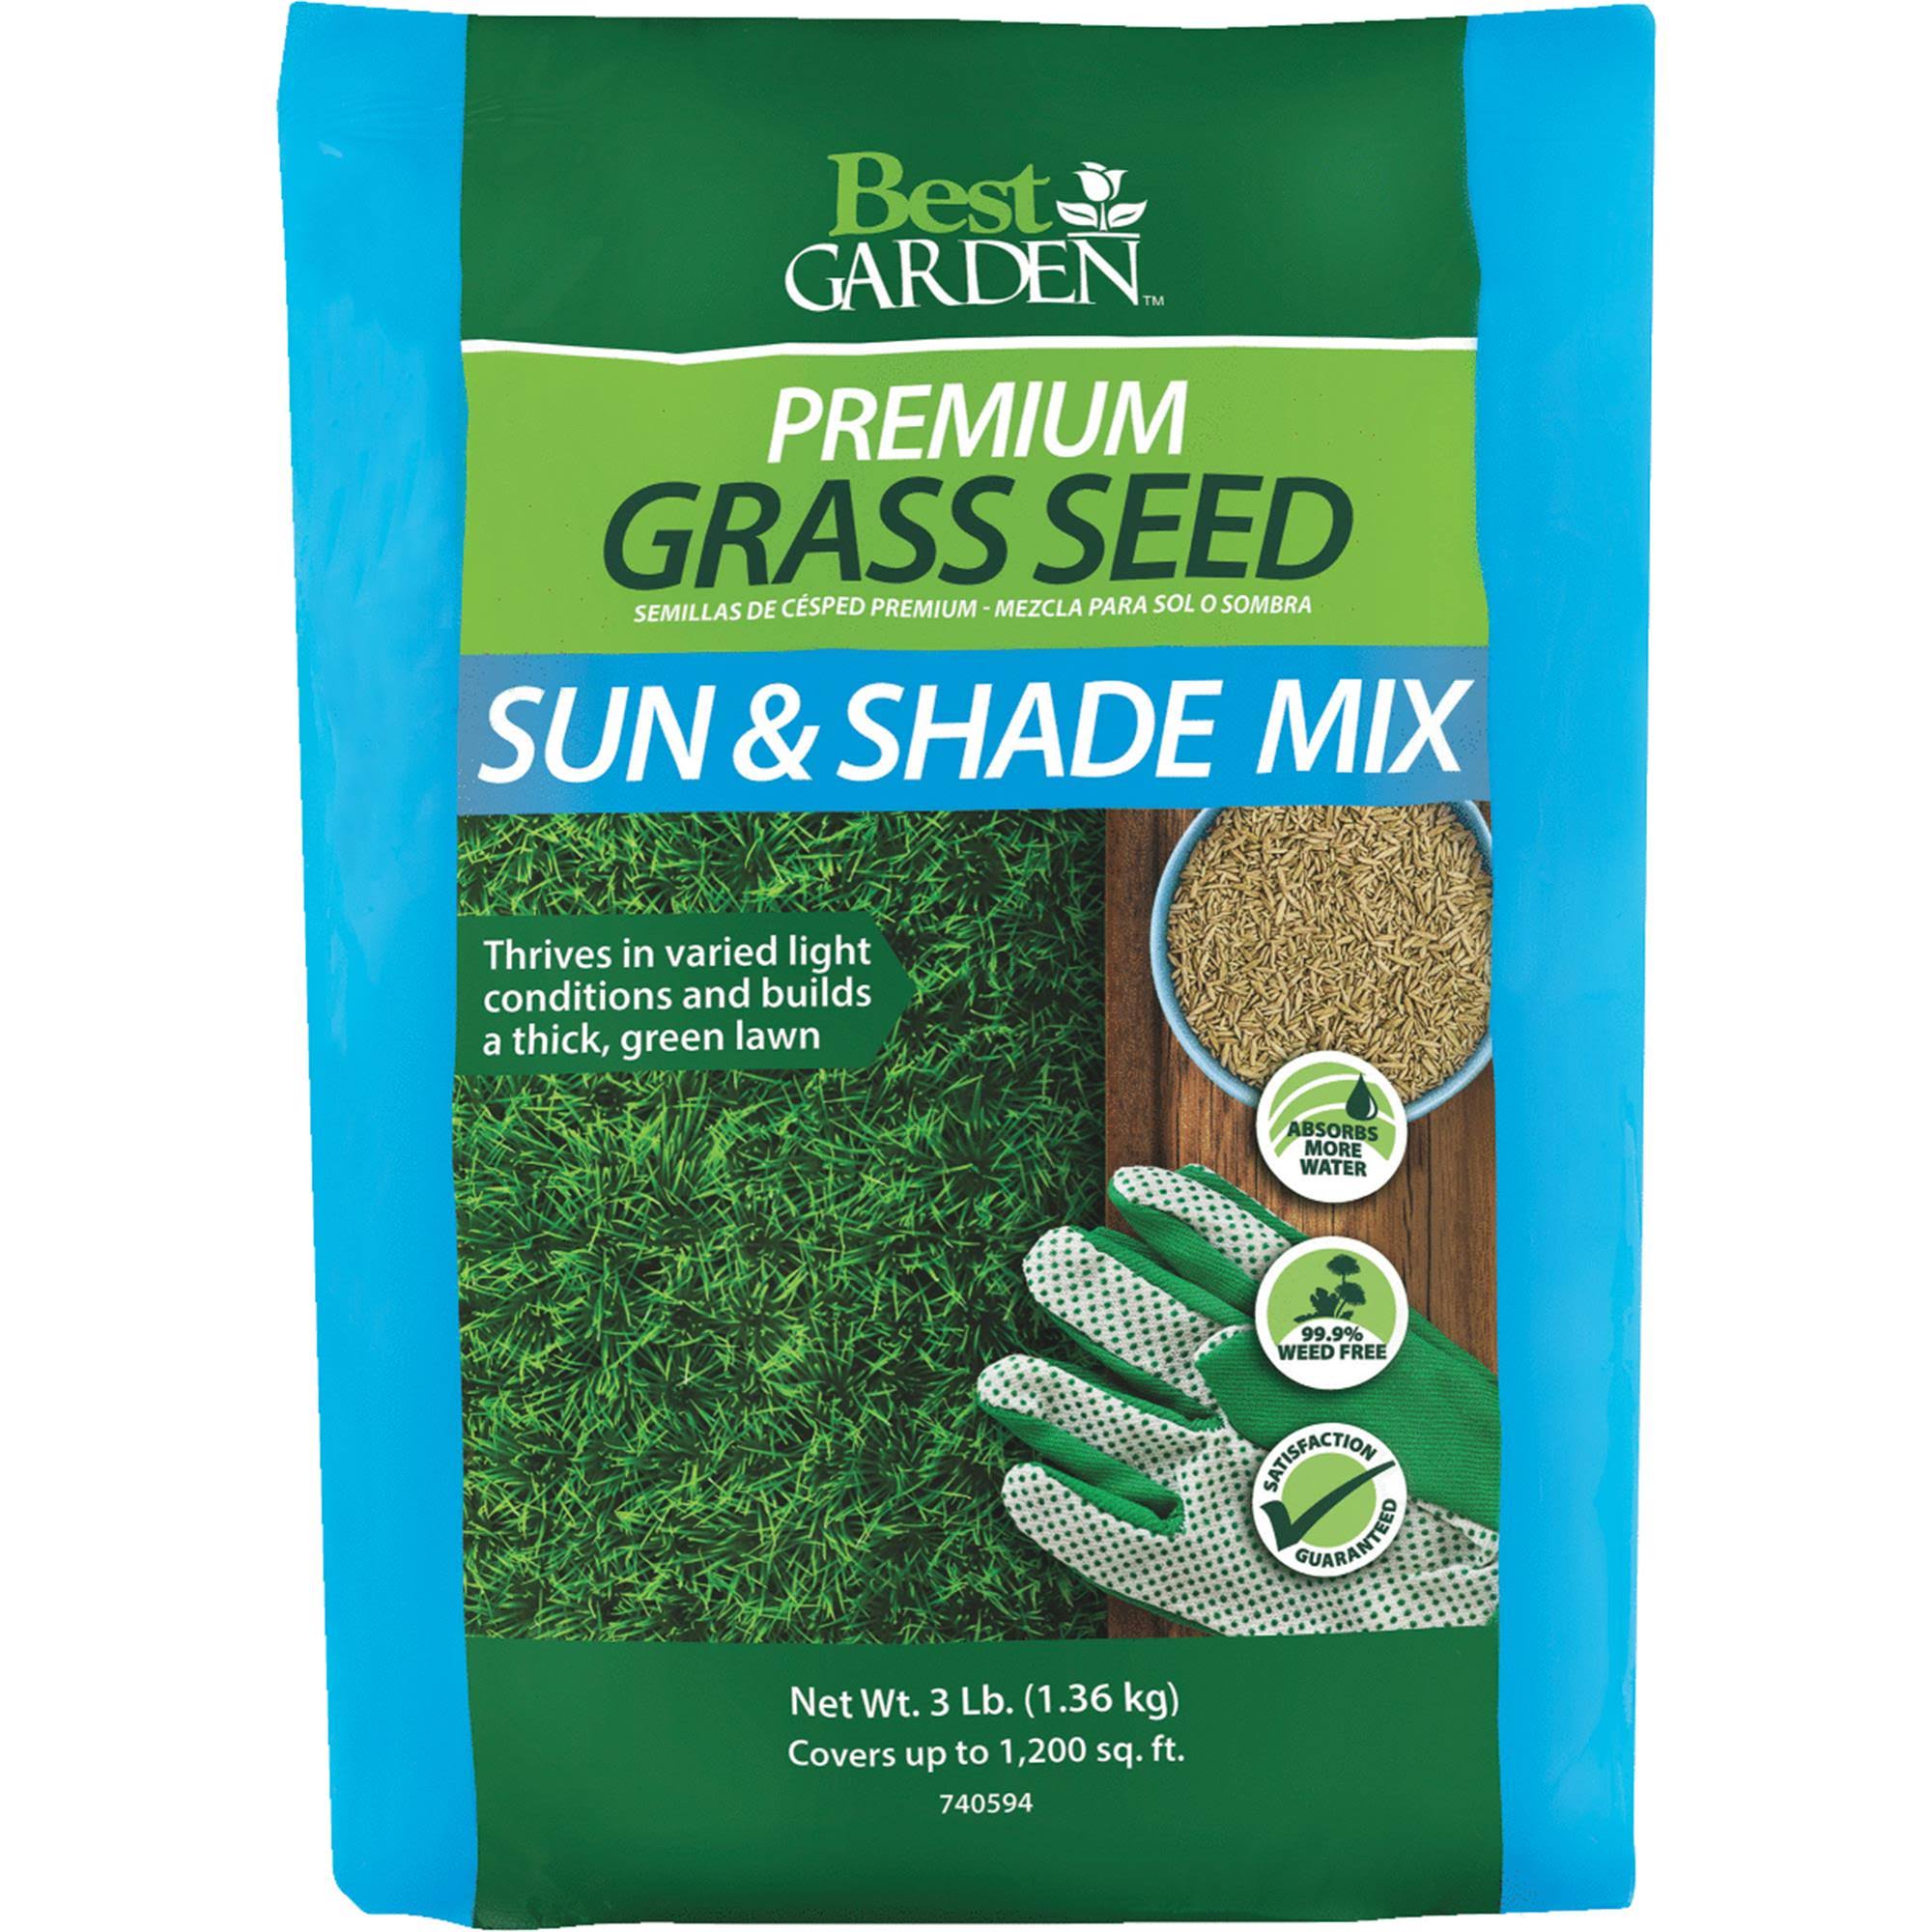 Best Garden Sun & Shade Grass Seed